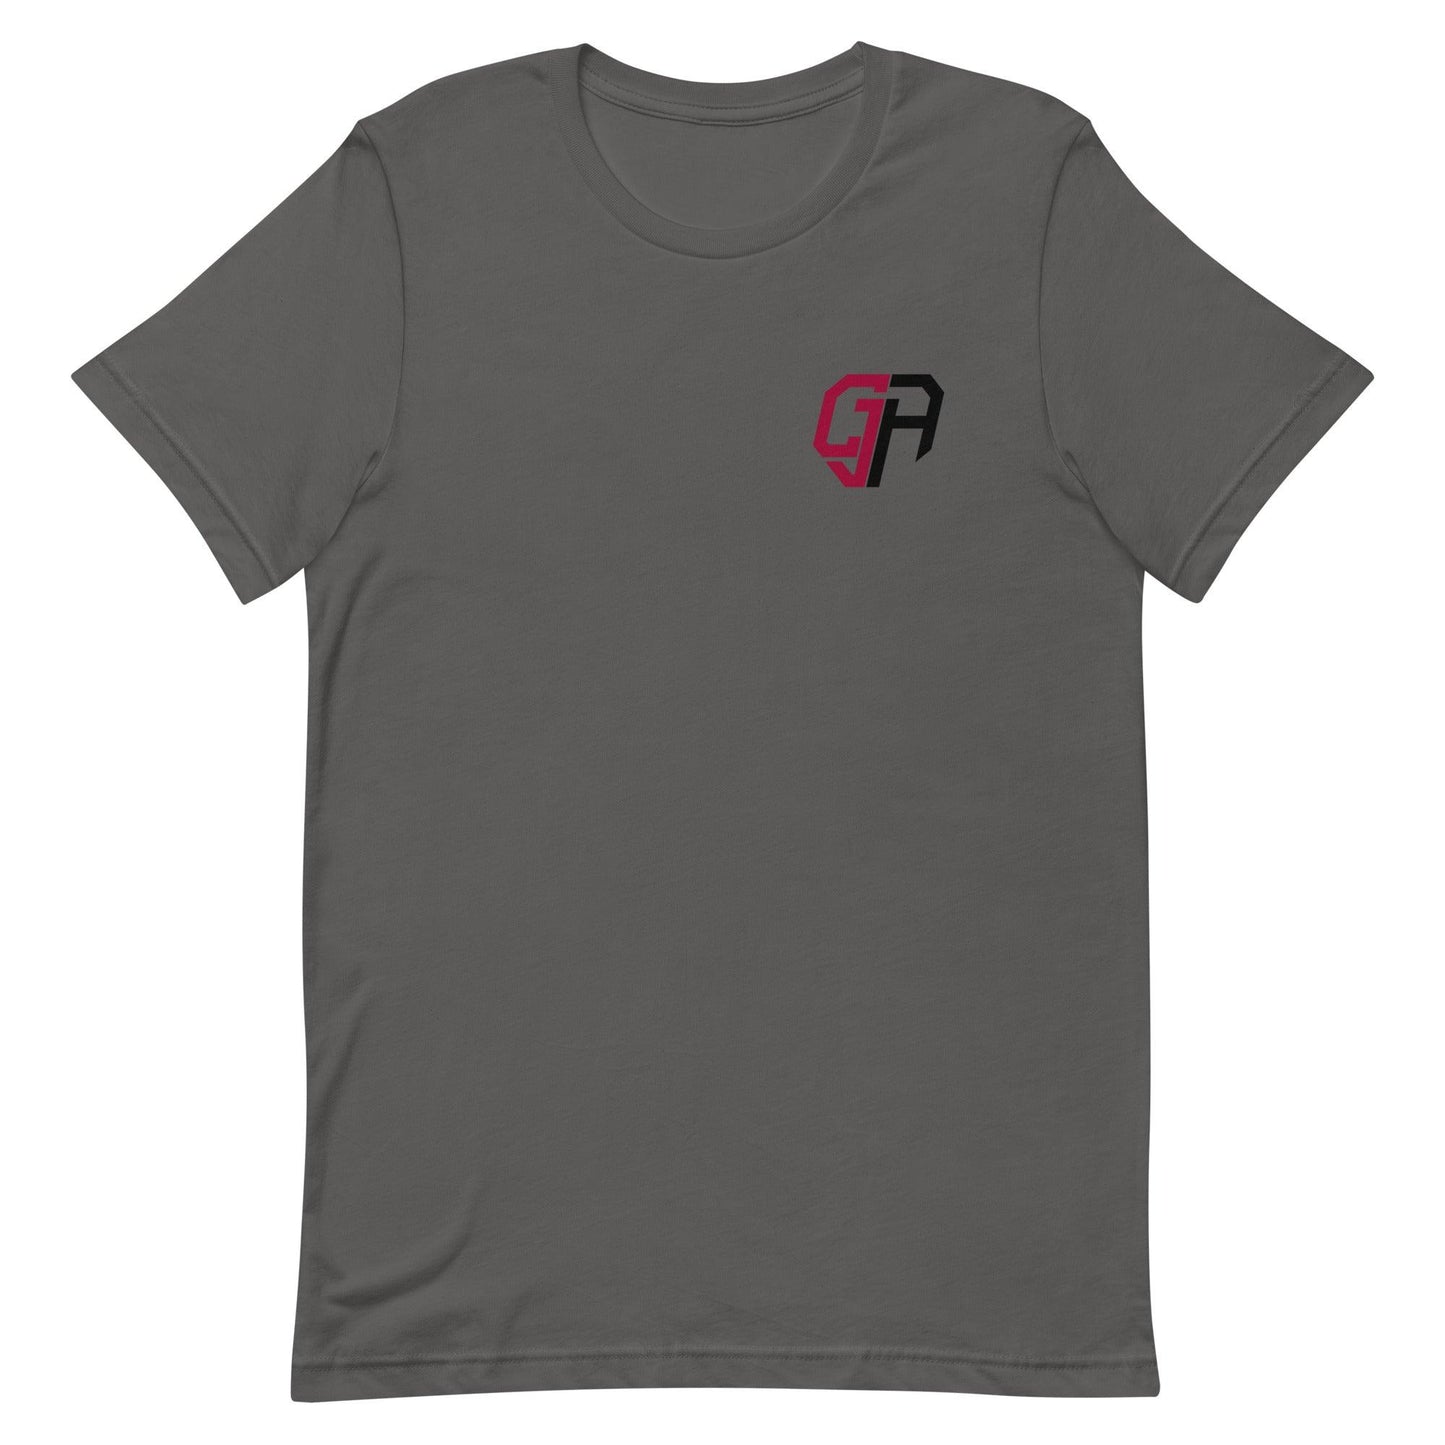 CJ Adams "Essential" t-shirt - Fan Arch